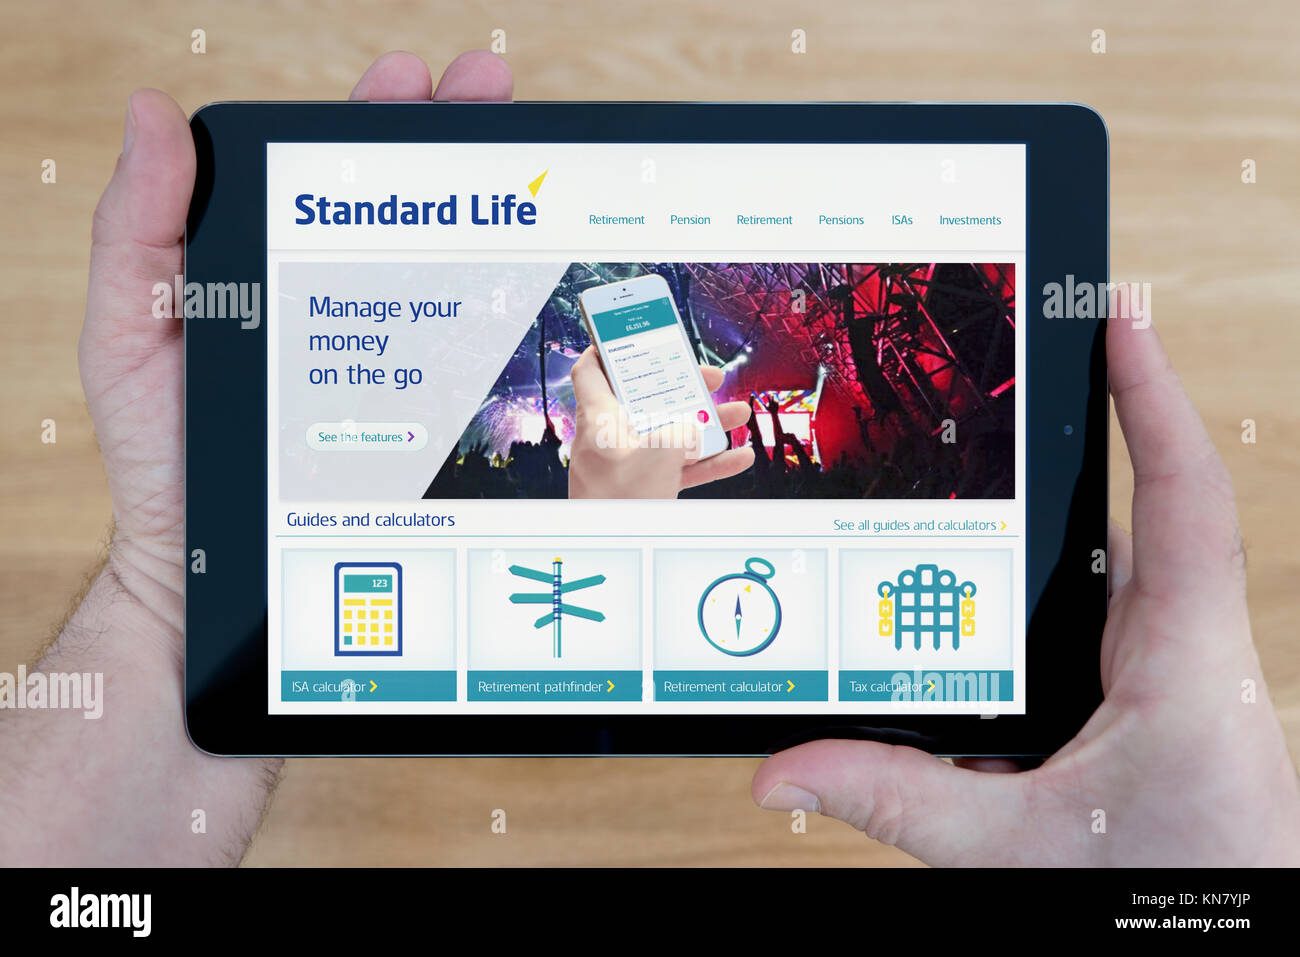 Homme regarde le site web de la Standard Life sur son iPad tablet device, tourné contre une table en bois page contexte (usage éditorial uniquement) Banque D'Images